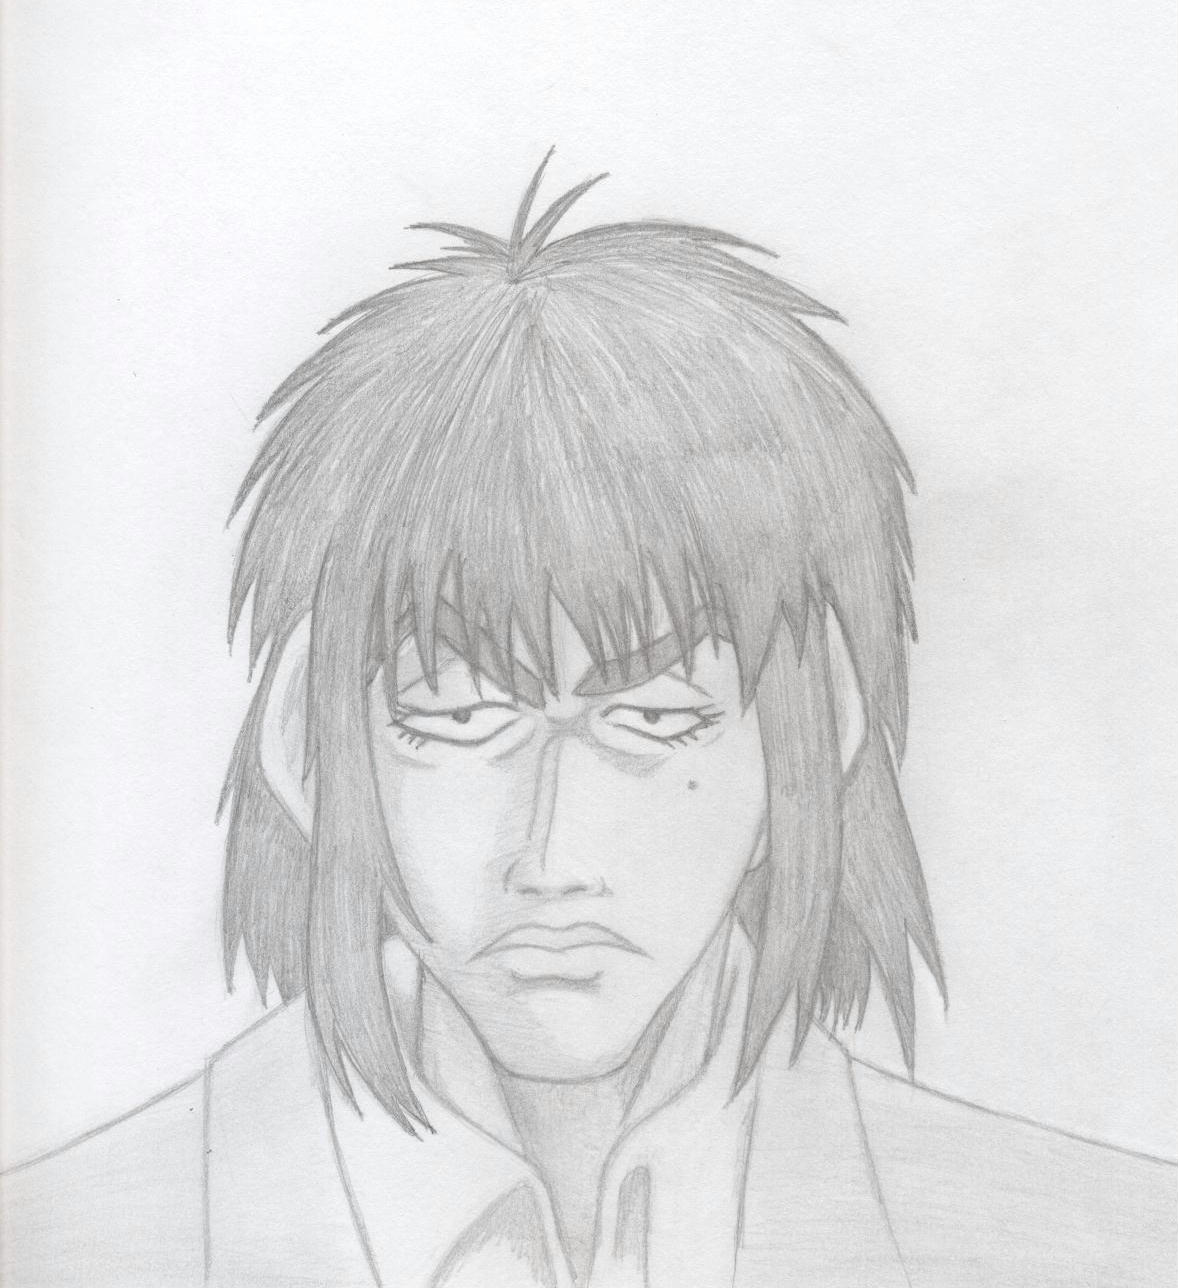 Portrait of Kouji by Ran_The_Hyena